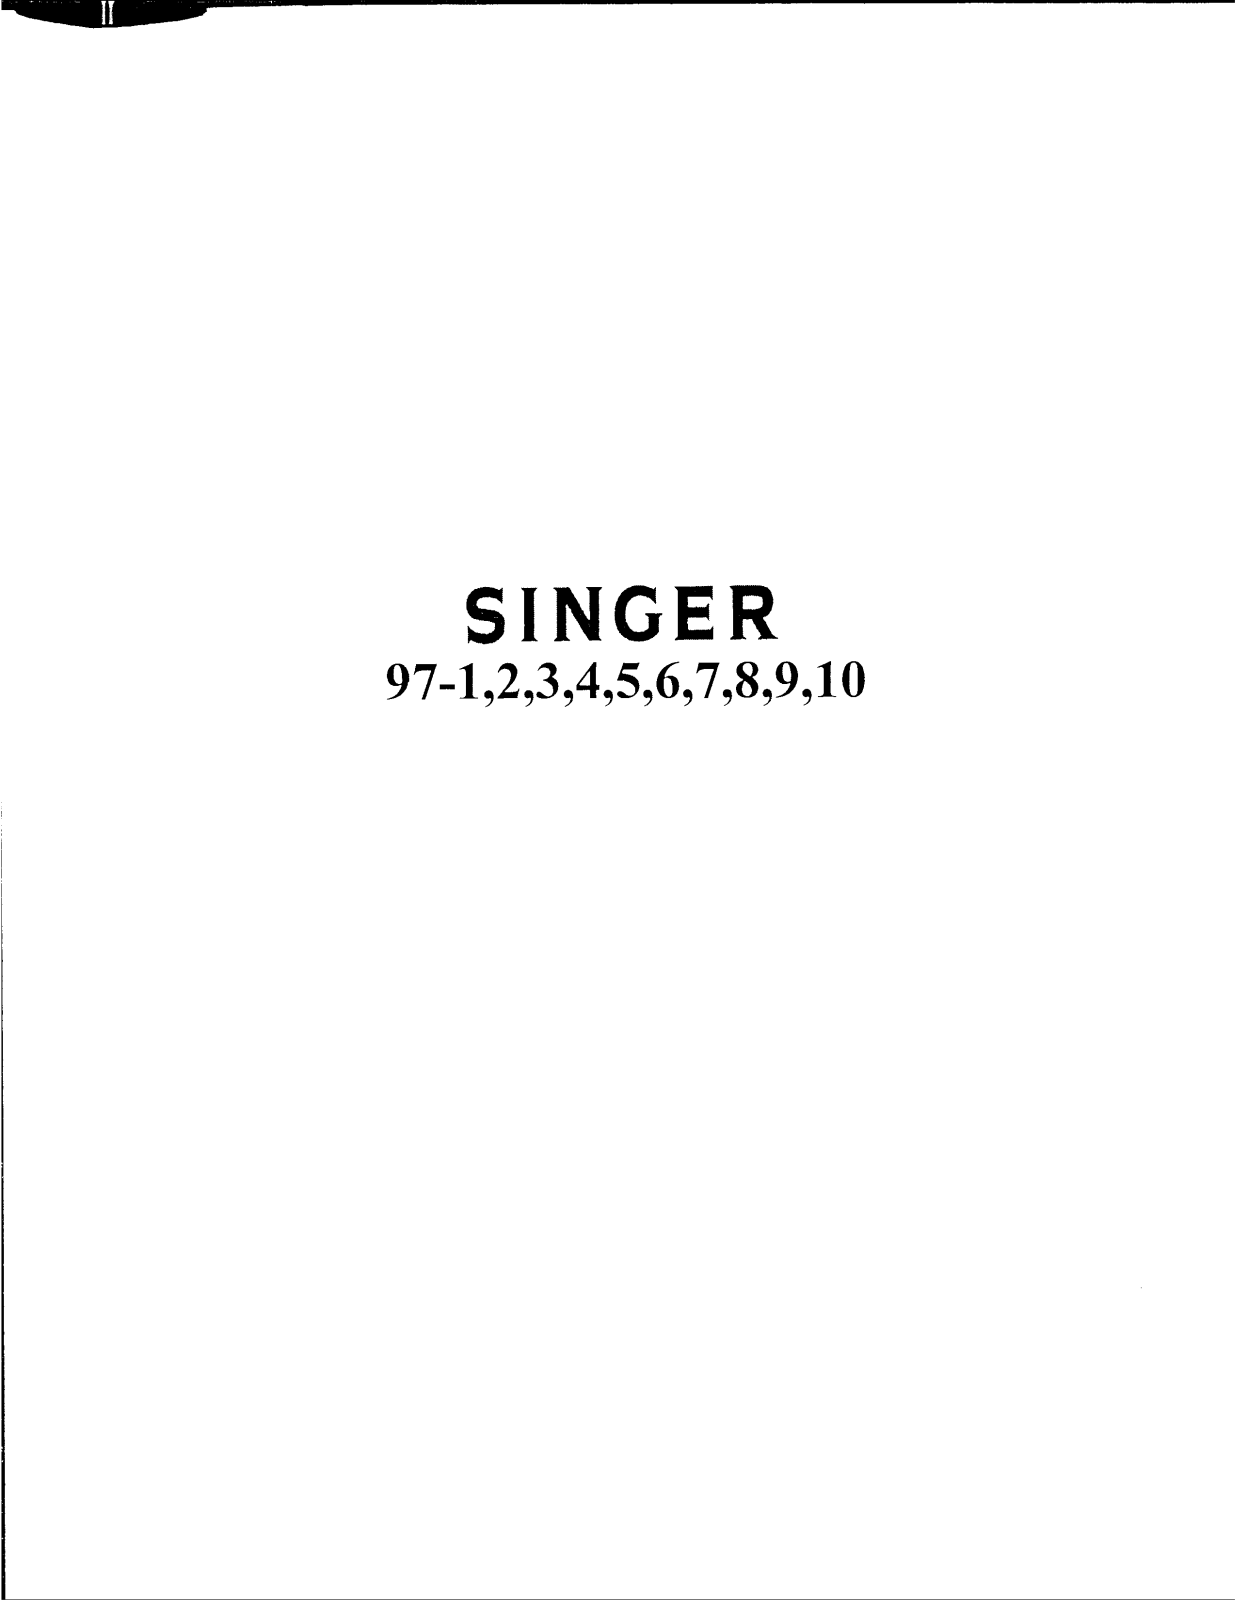 Singer 97-9, 97-8, 97-7, 97-6, 97-5 Owner's Manual